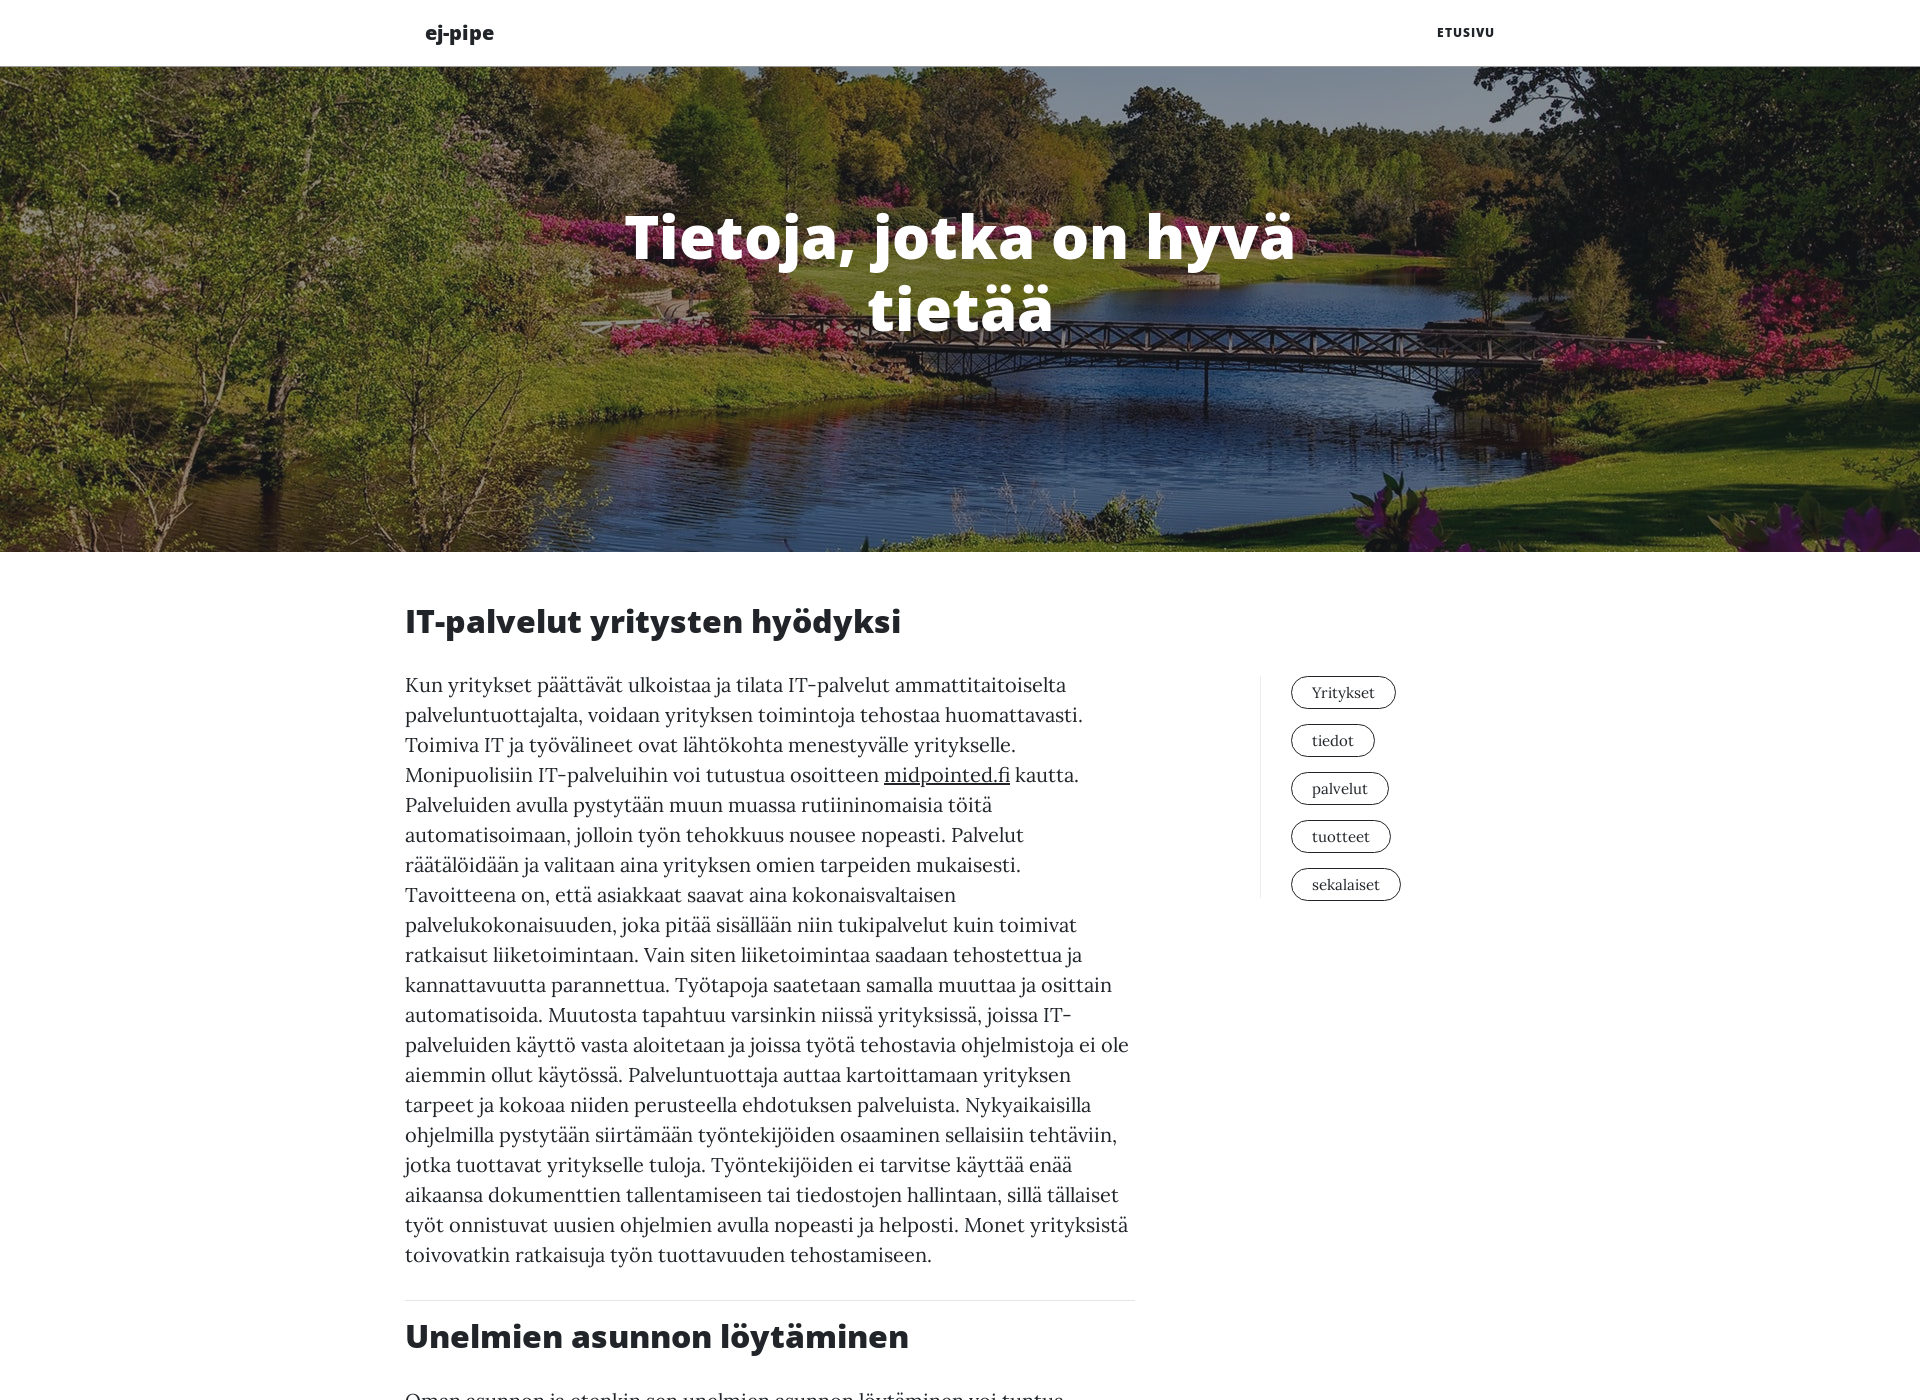 Näyttökuva ej-pipeline.fi